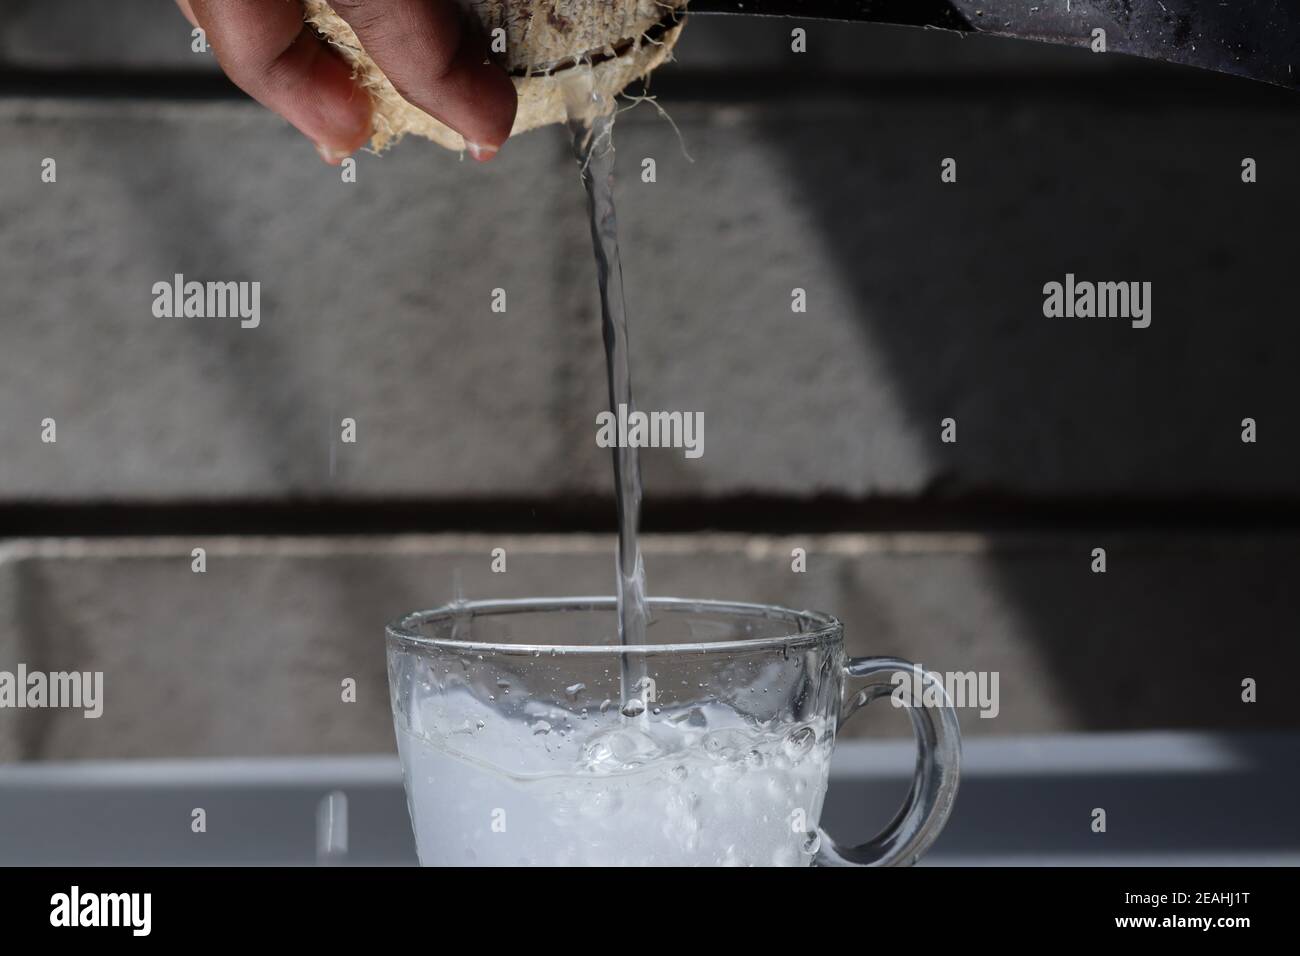 Wenn eine Kokosnuss bricht, gießt sehr leckeres Kokoswasser in eine Glasschale. Dieses Kokoswasser ist ein starkes und gesundes Getränk aus der Natur. Sehr lecker. Stockfoto